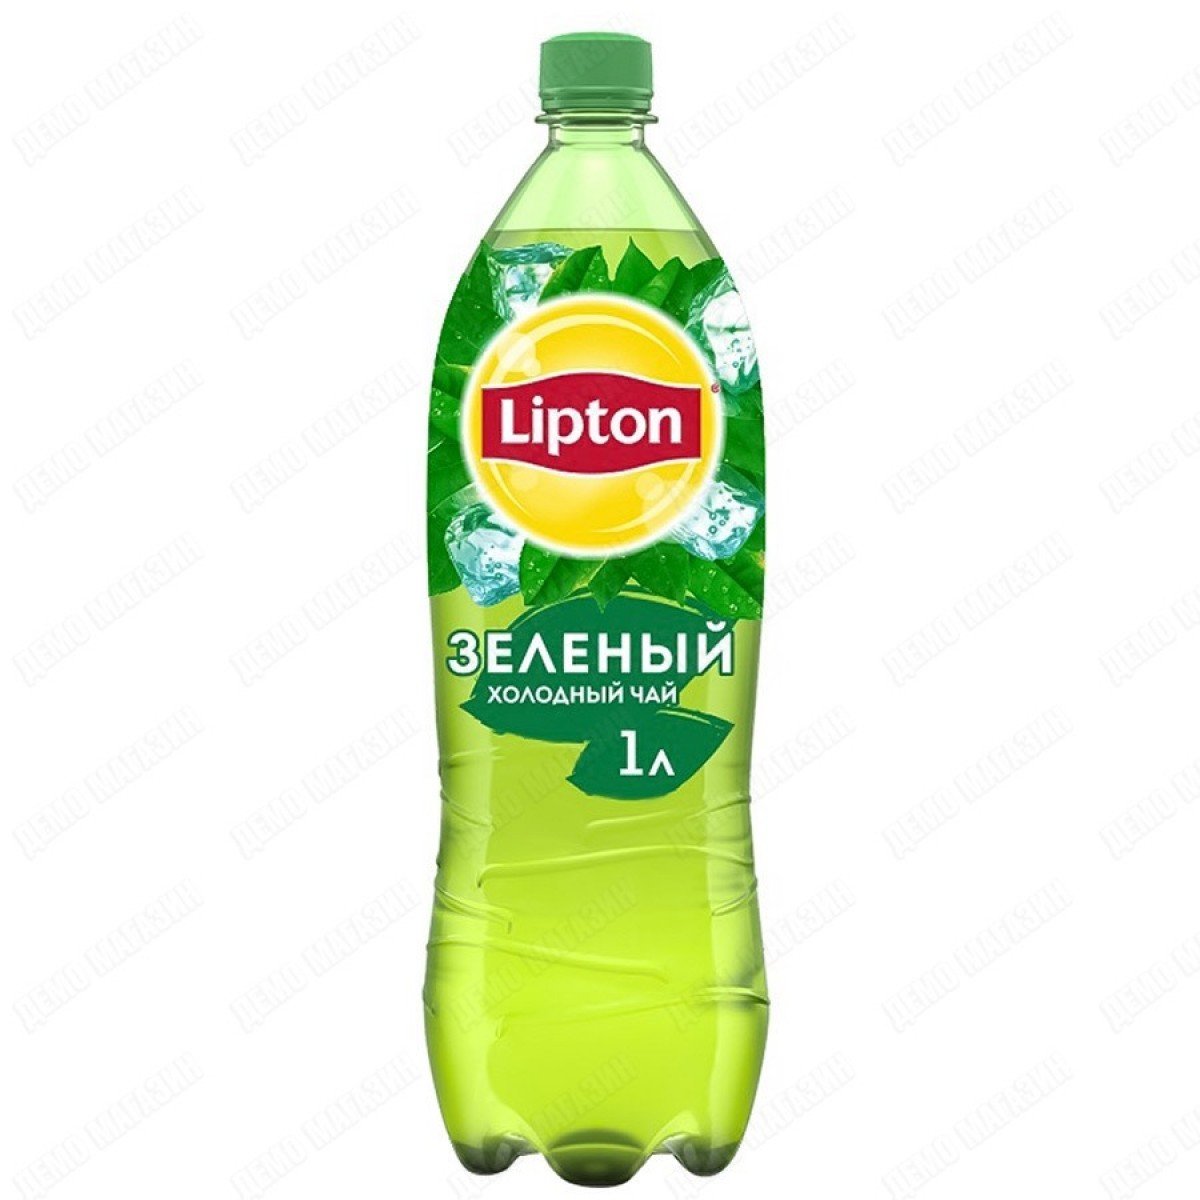 Липтон Чай Зеленый бутылка 0,5